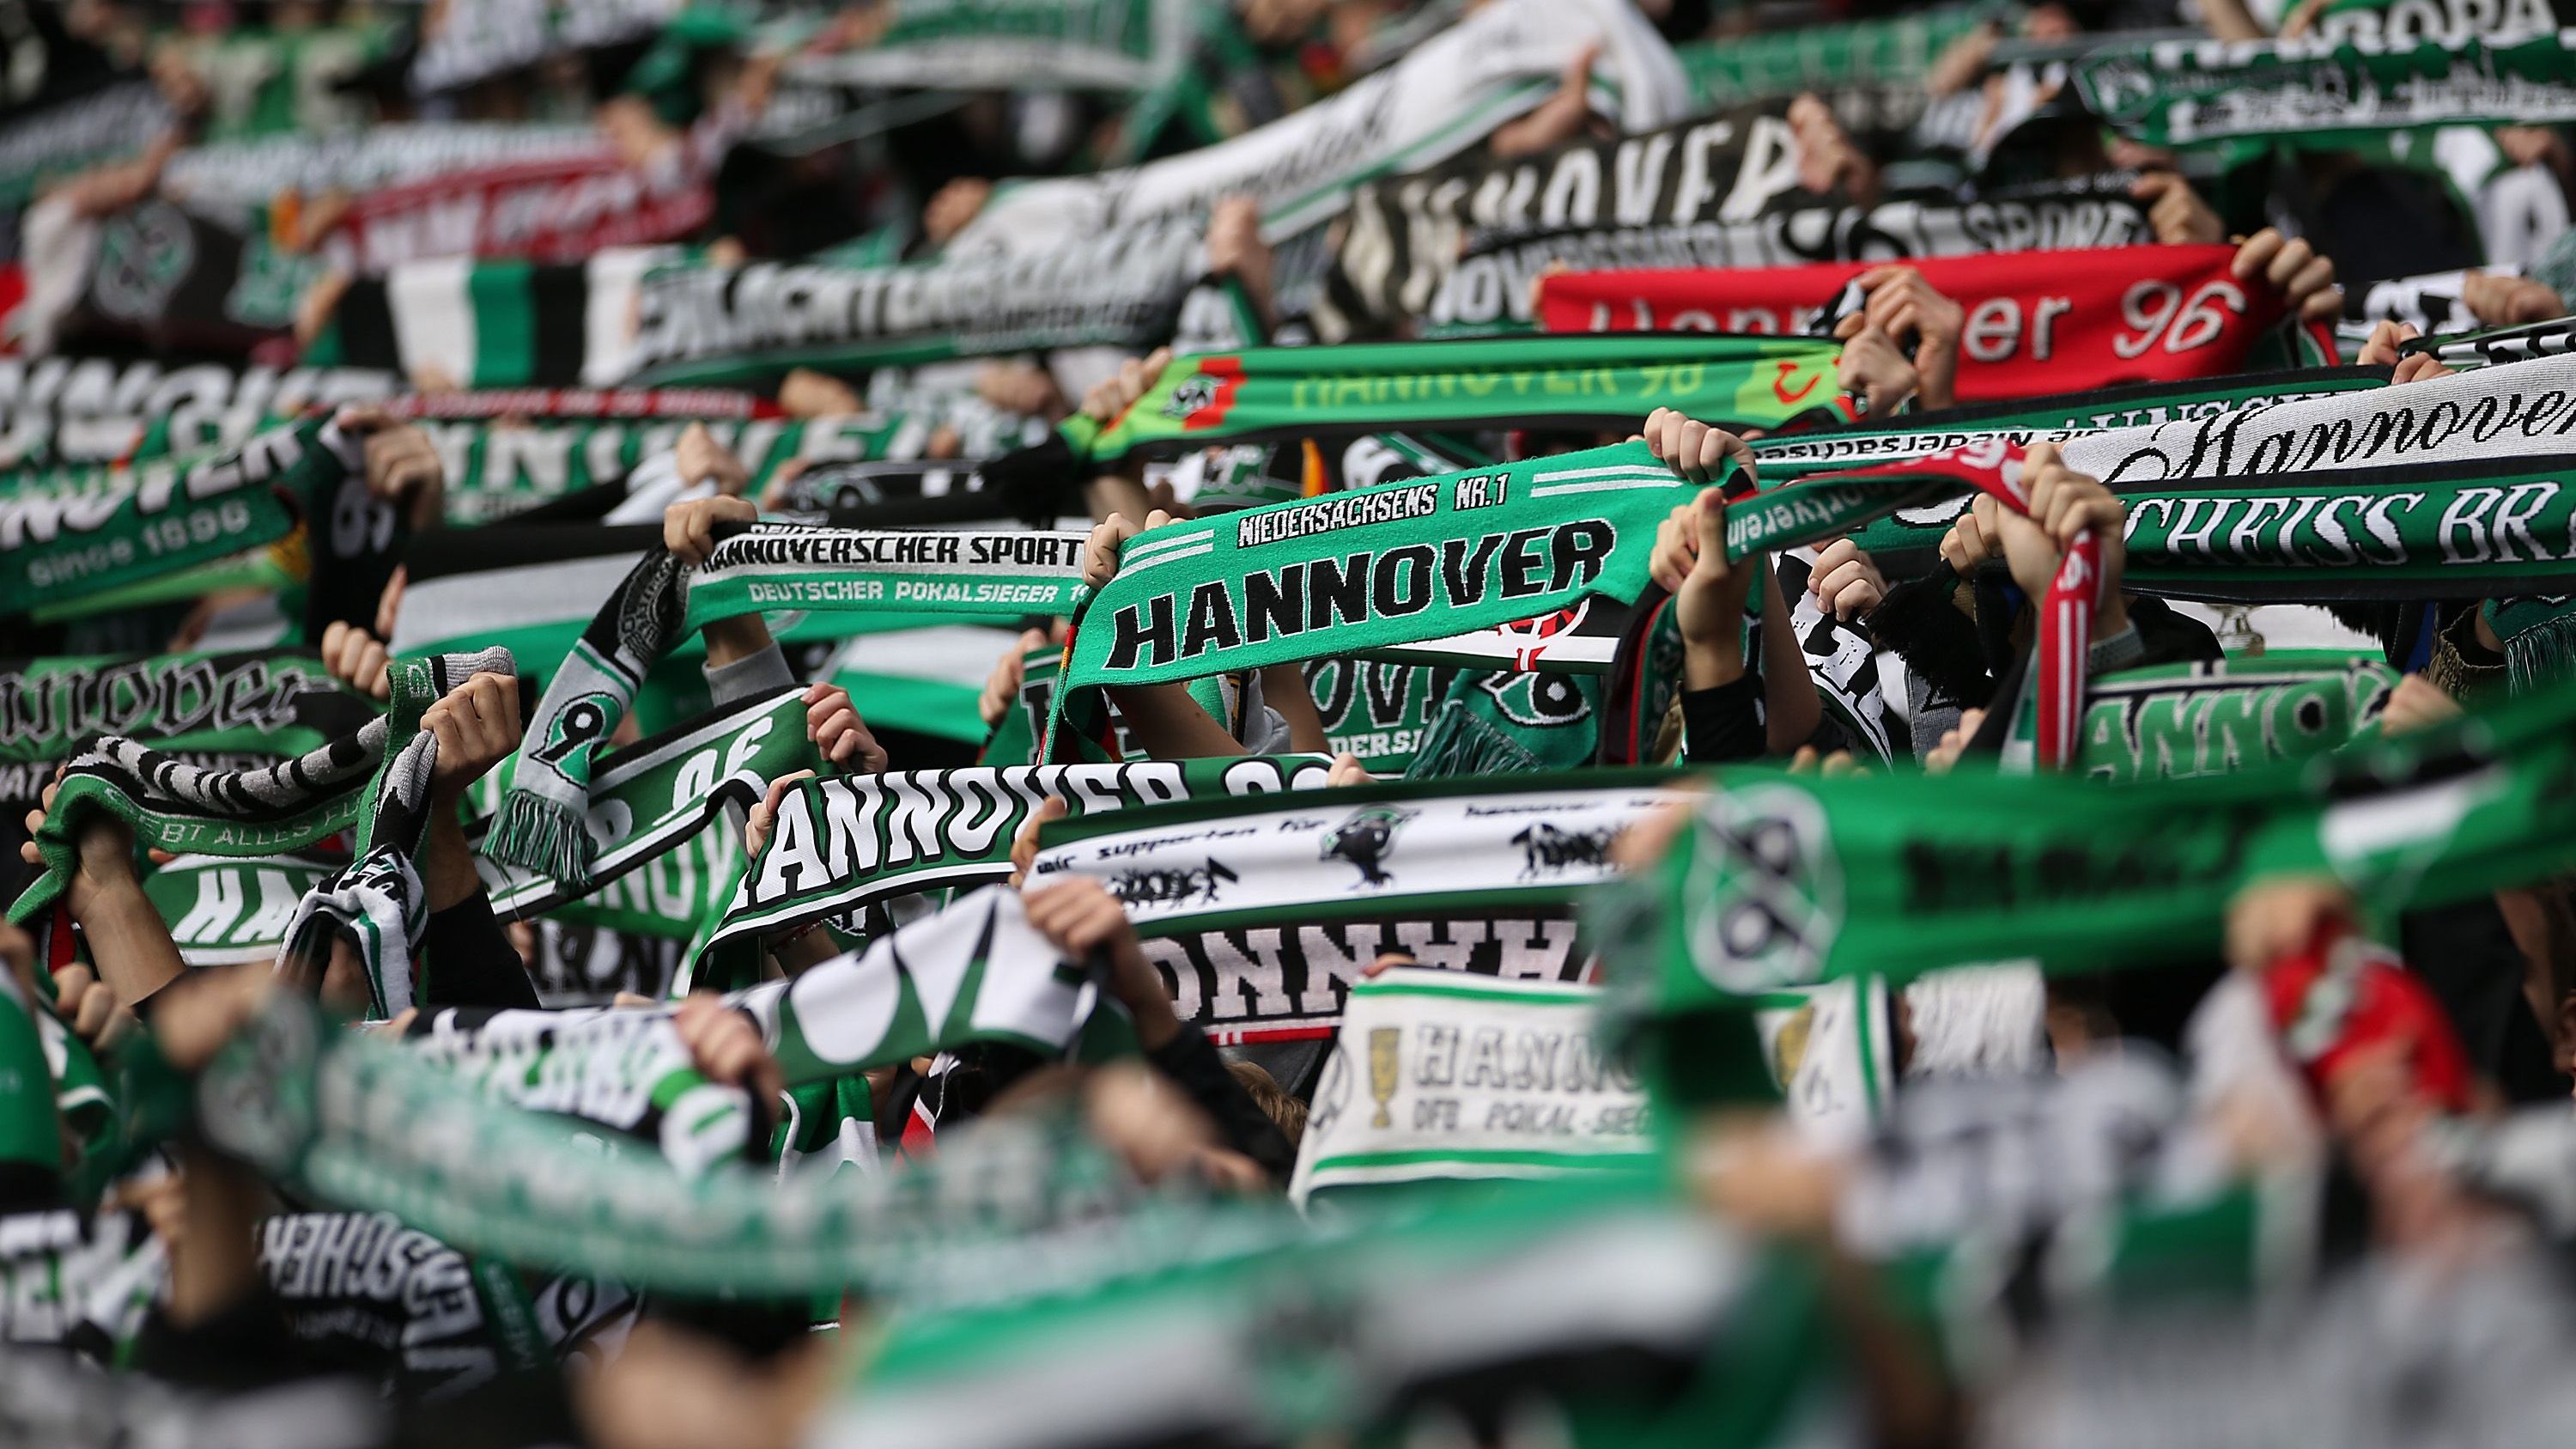 Die Fans von Hannover 96 sind angesichts der Investoren-Pläne der DFL richtig sauer. Die Anhänger schwiegen bei Holstein Kiel länger als die geplanten zwölf Minuten. Statt lautstarker Unterstützung leiser Protest. Die Fans hielten ein Banner mit "Kind muss weg" in die Höhe. Der 96-Boss hatte bei der geheimen Abstimmung der Klubs bei der DFL, entgegen den Willen seines Klubs wohl für einen Investor gestimmt.&nbsp;